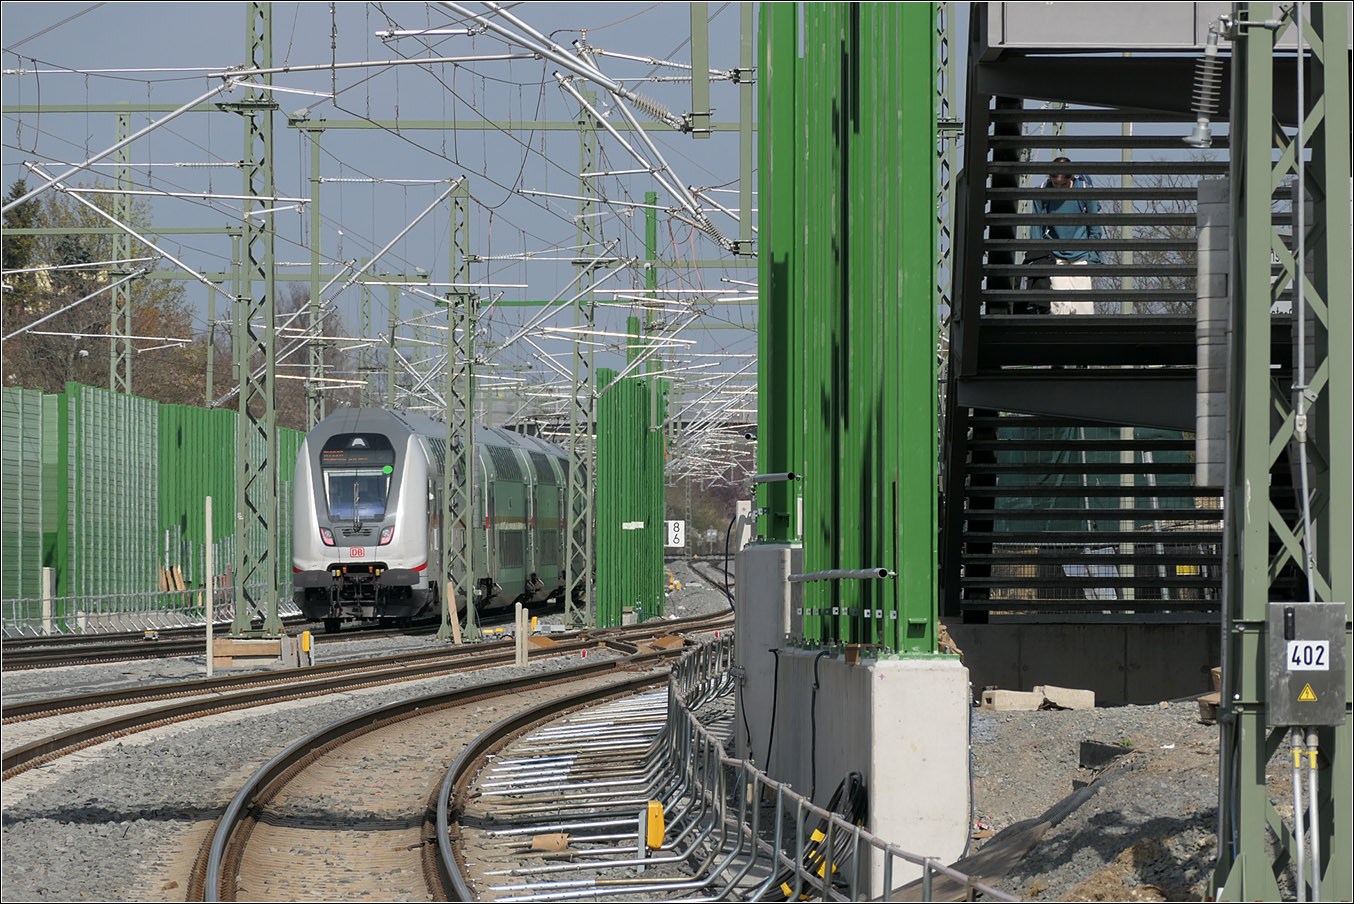 Die Bahn wird grüner - 

Von 2017 bis 2024 wurde die Main-Weser-Bahn im Abschnitt Frankfurt West - Bad Vilbel viergleisig ausgebaut um für die S-Bahn eigenen Gleise zu erhalten, was ein 15-Minuten Takt bis Bad Vilbel ermöglicht. In einem zweiten Bauabschnitt sollen die vier Gleise bis zum S-Bahn-Endpunkt Friedberg verlängert werden.

Erschrocken bin ich über die hohen Lärmschutzwände rechts und links der Bahn und teilweise auch zwischen den Gleisen. Einen Ausblick für die Fahrgäste gibt es da nicht mehr. Auch möchte ich nicht von meiner Wohnung auf solche Blickbarrieren blicken müssen. Wir selber wohnen an einer sehr stark befahren Strecke; die Zugvorbeifahrten empfinde ich nicht als störend.

Erkennbar im Bild auch der Nachteil von Fußgängerüberführungen gegenüber Unterführungen, da doch eine weit größerer Höhenunterschied überwunden werden muss. Dafür entfällt aber das oft unangenehme Raumgefühl in den Fußgängertunneln.

Aufgenommen an der S-Bahnstation Frankfurt-Eschersheim.

21.03.2024 (M)